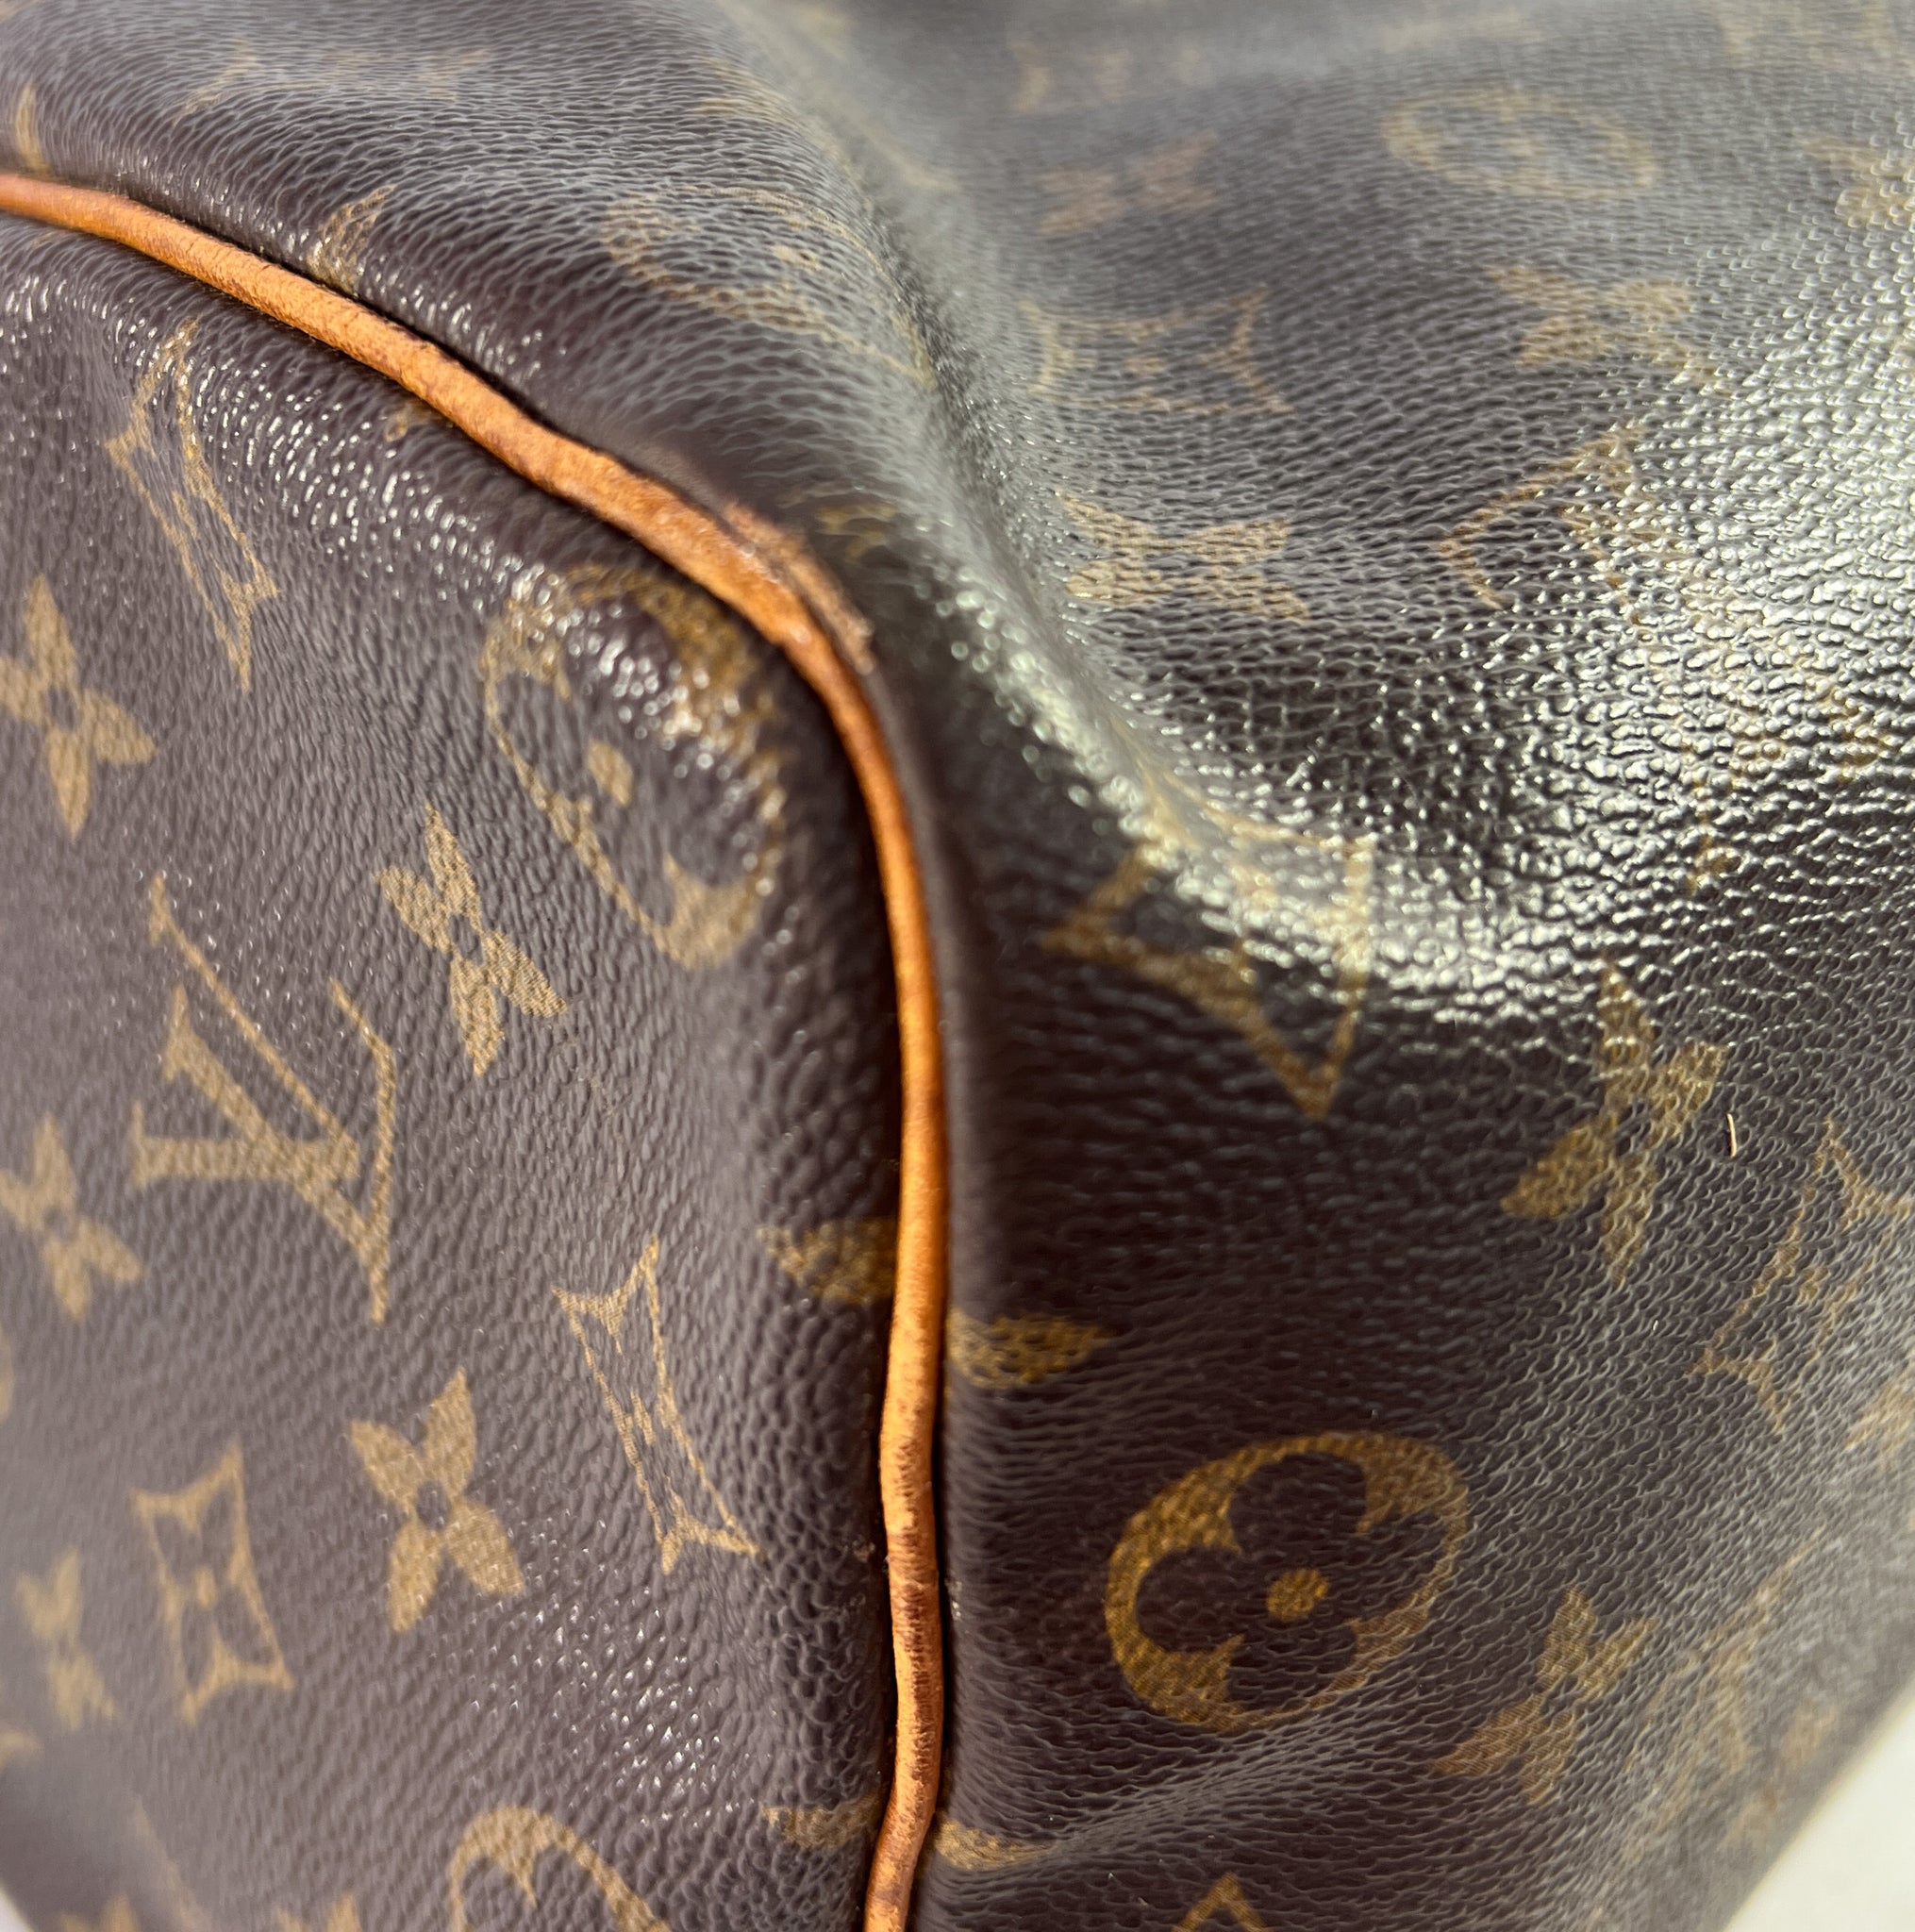 Authentic Louis Vuitton Monogram Speedy 35 Hand Bag Purse MB 0012 Vintage  Good